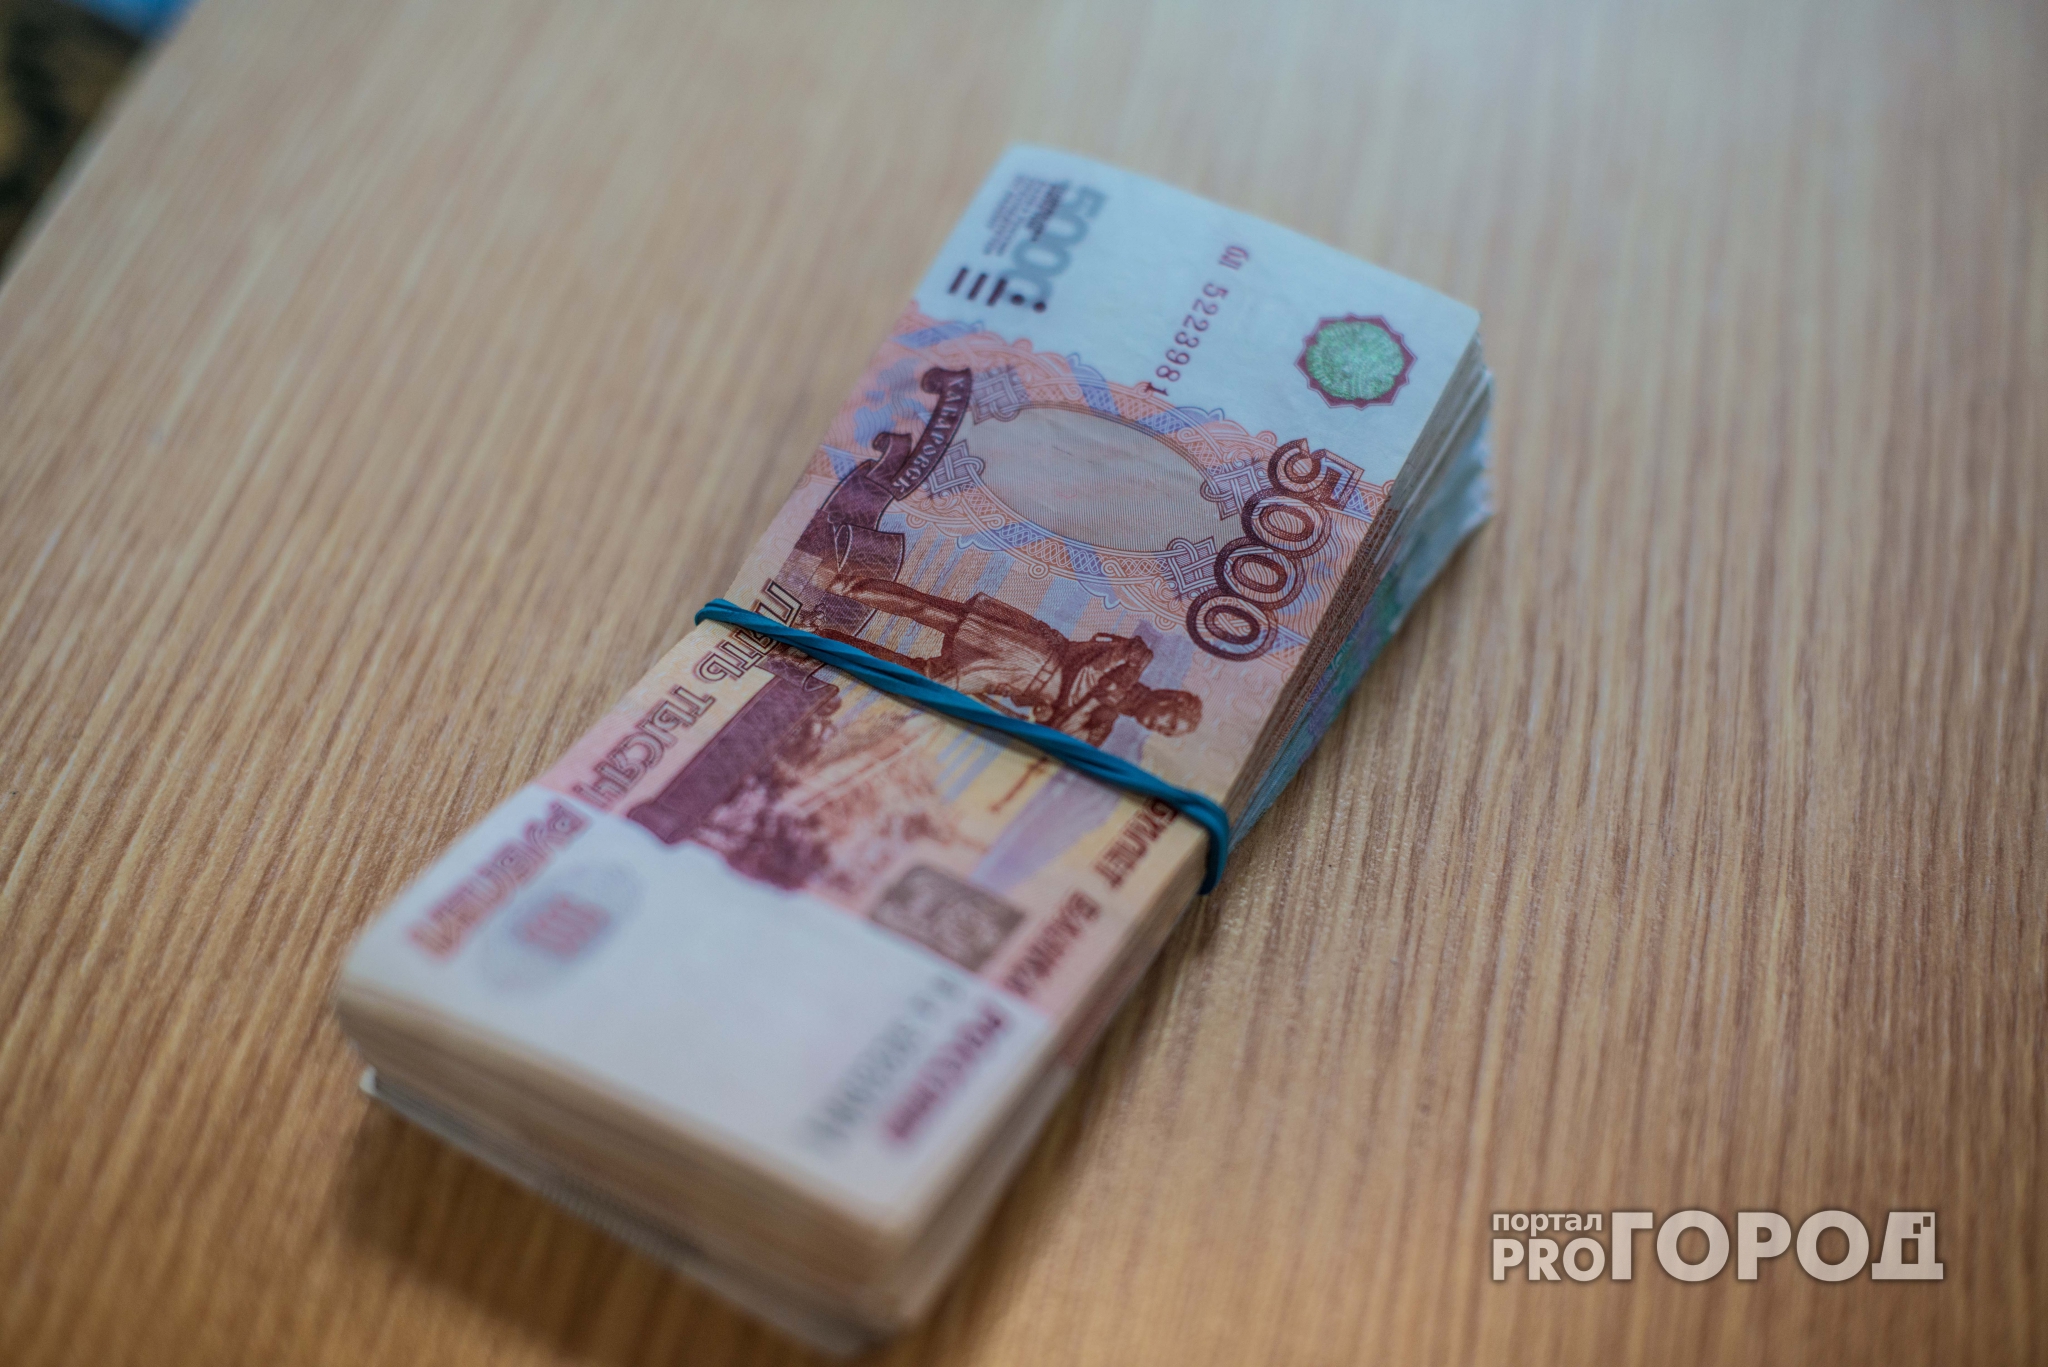 Нижегородская компания не доплатила работникам 750 тысяч рублей